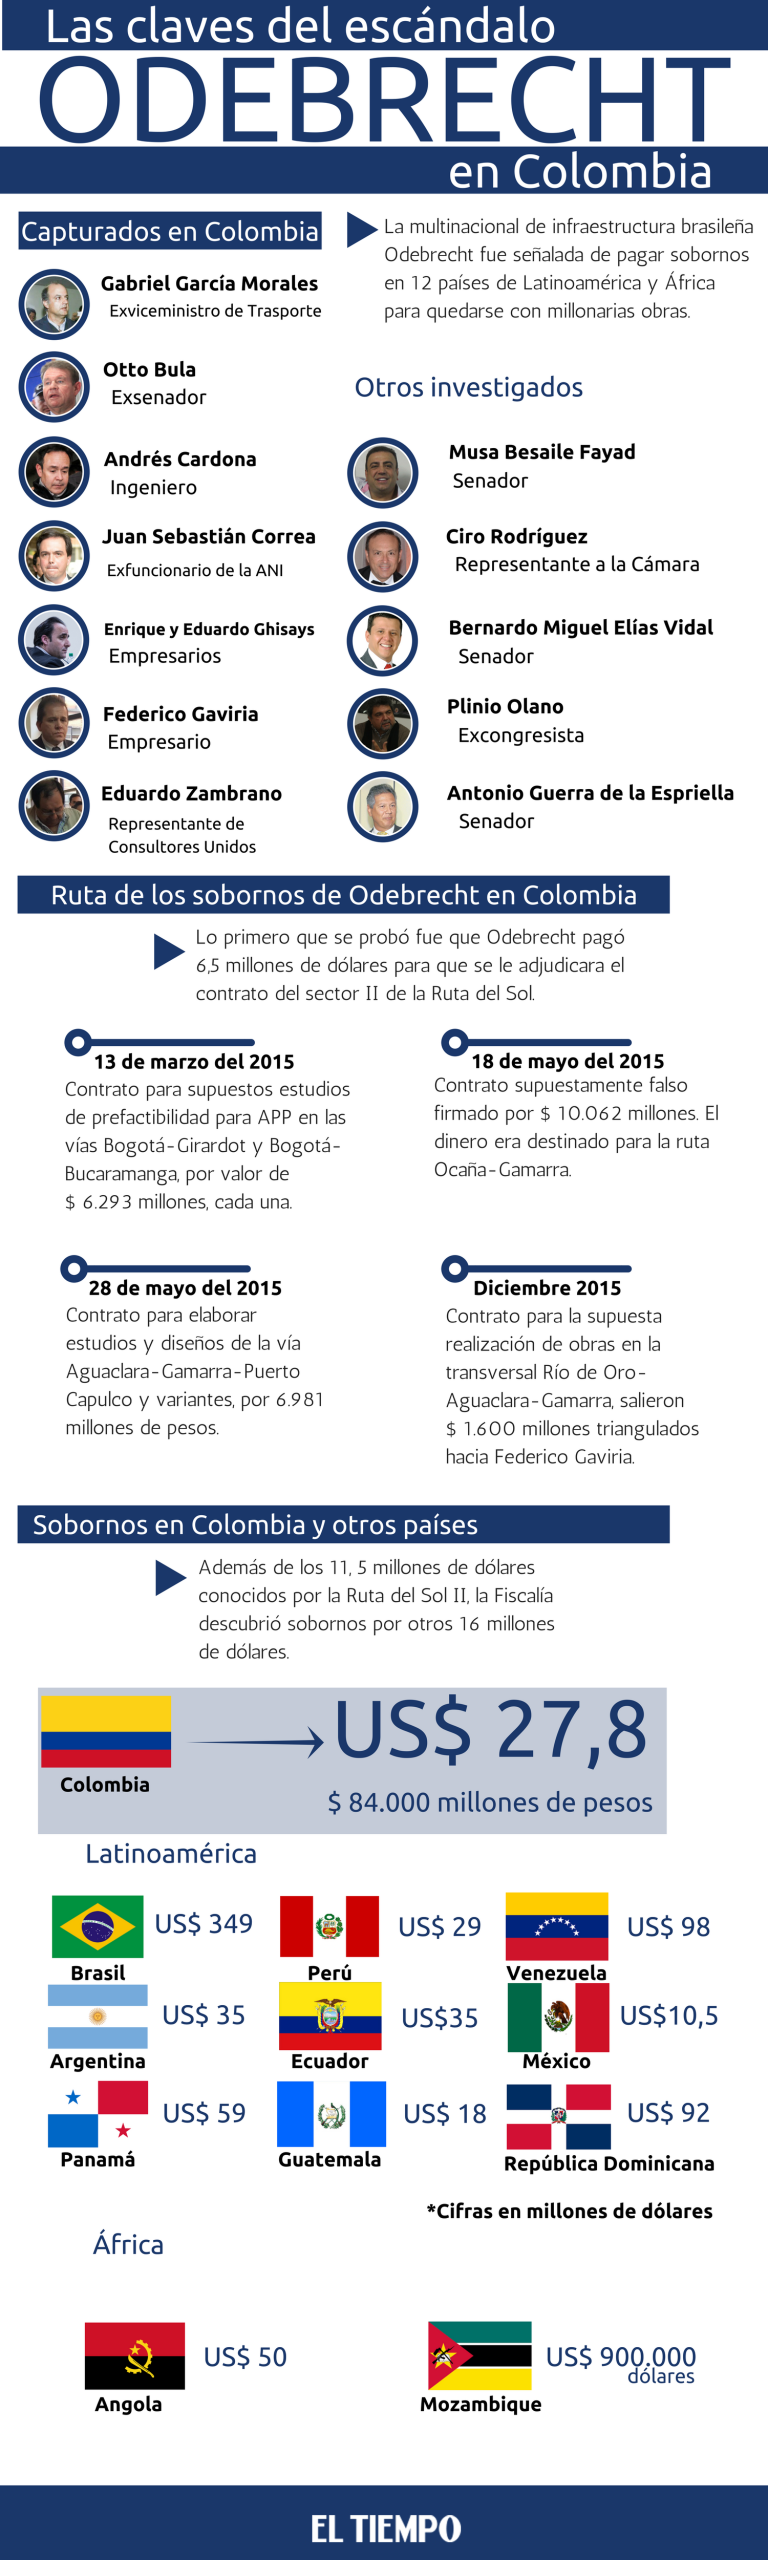 Involucrados, sobornos y todas las claves de Odebrecht en Colombia